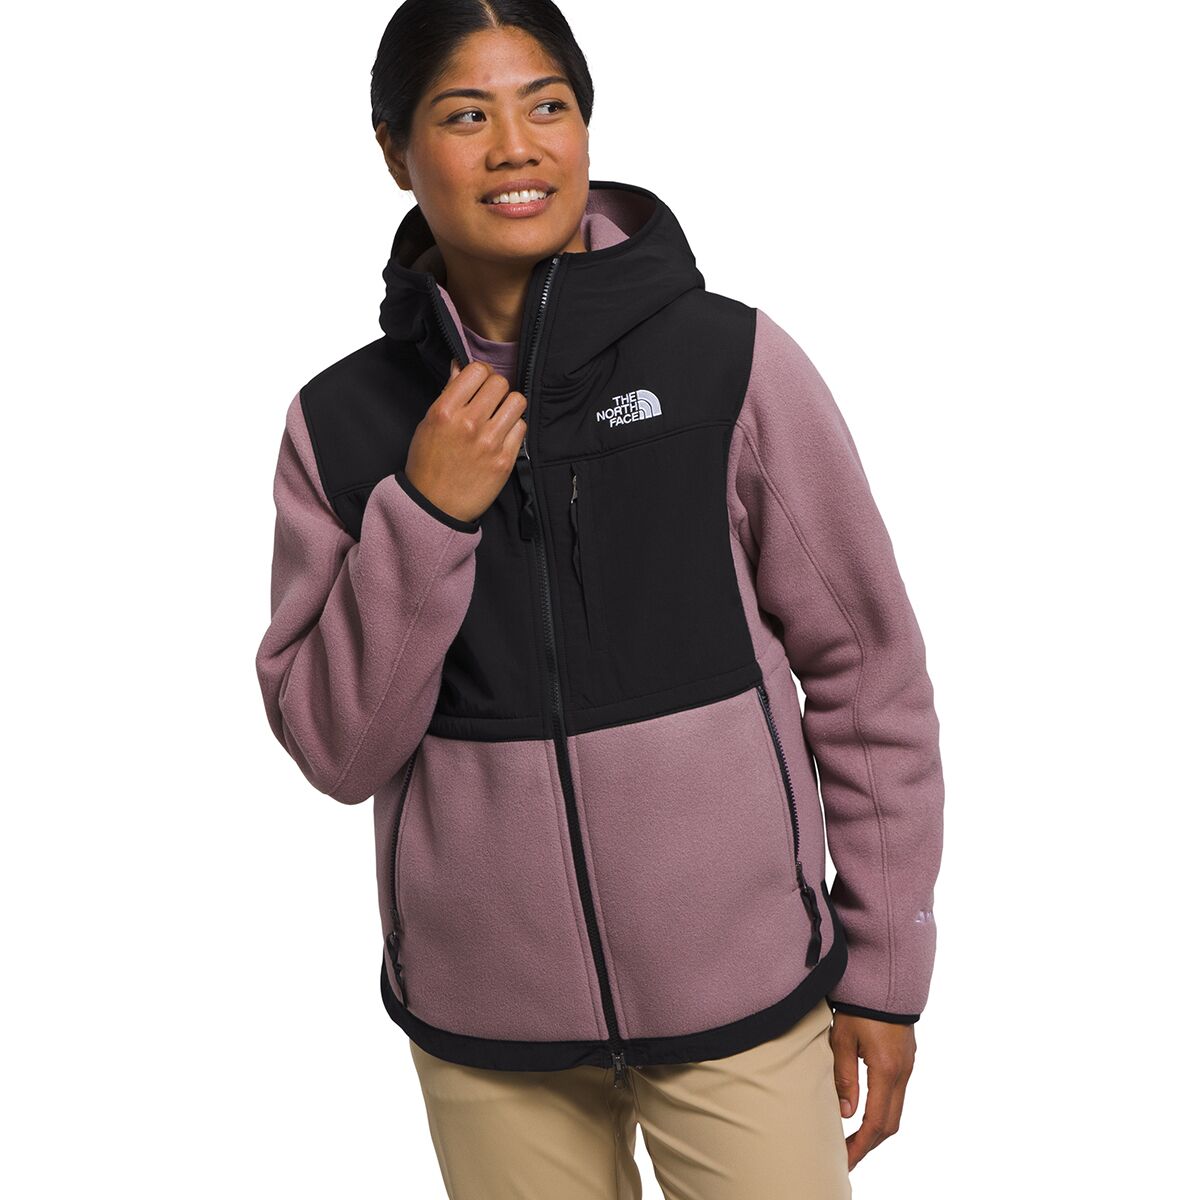 Denali 2 Hooded Fleece Jacket - Women